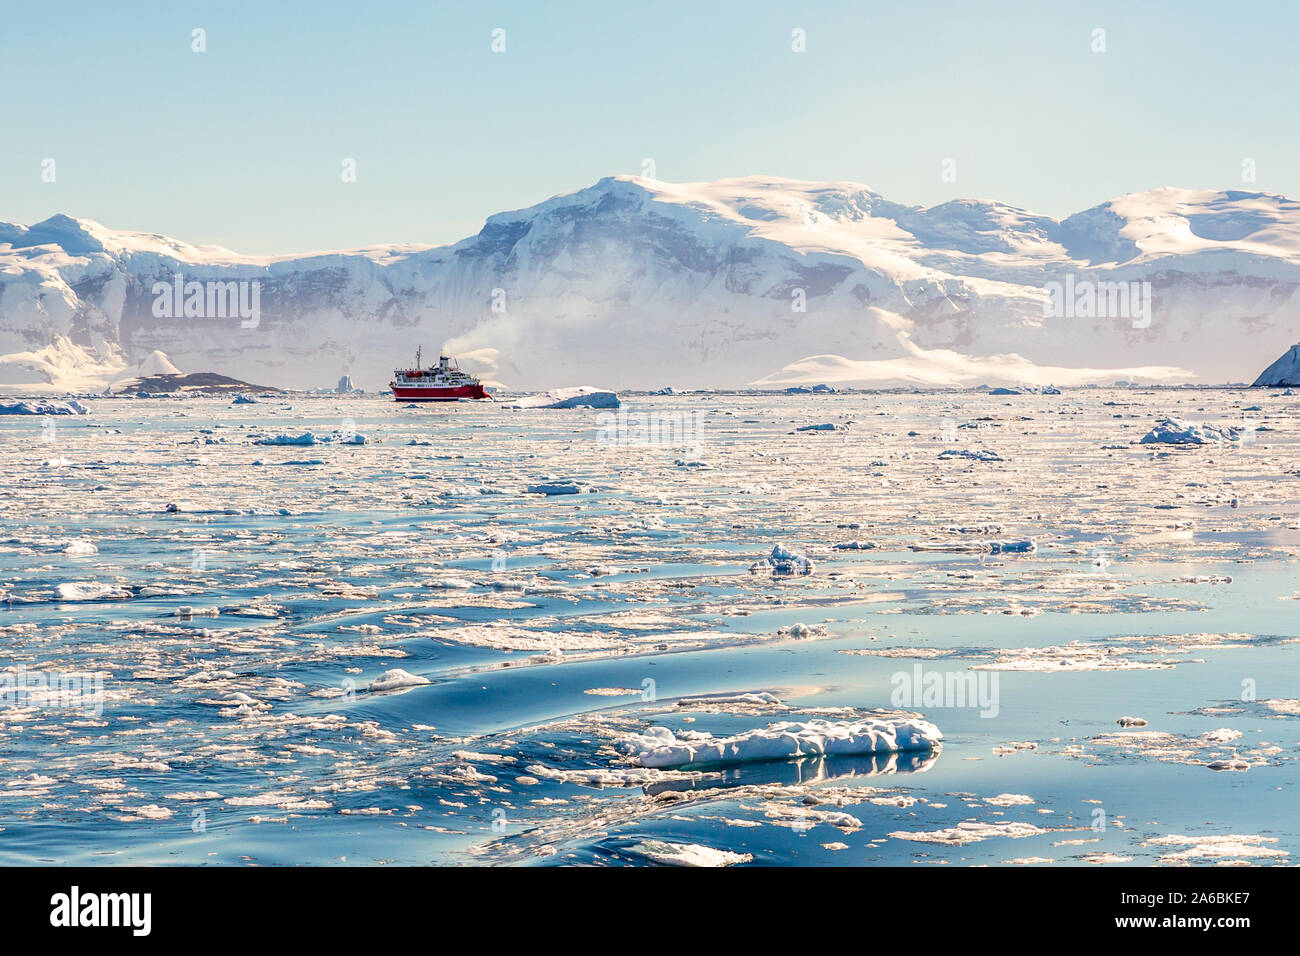 Croisière rouge dérive vapeur loin parmi les icebergs à l'énorme rocher et des glaciers en arrière-plan, la baie de Neco, Antarctique Banque D'Images